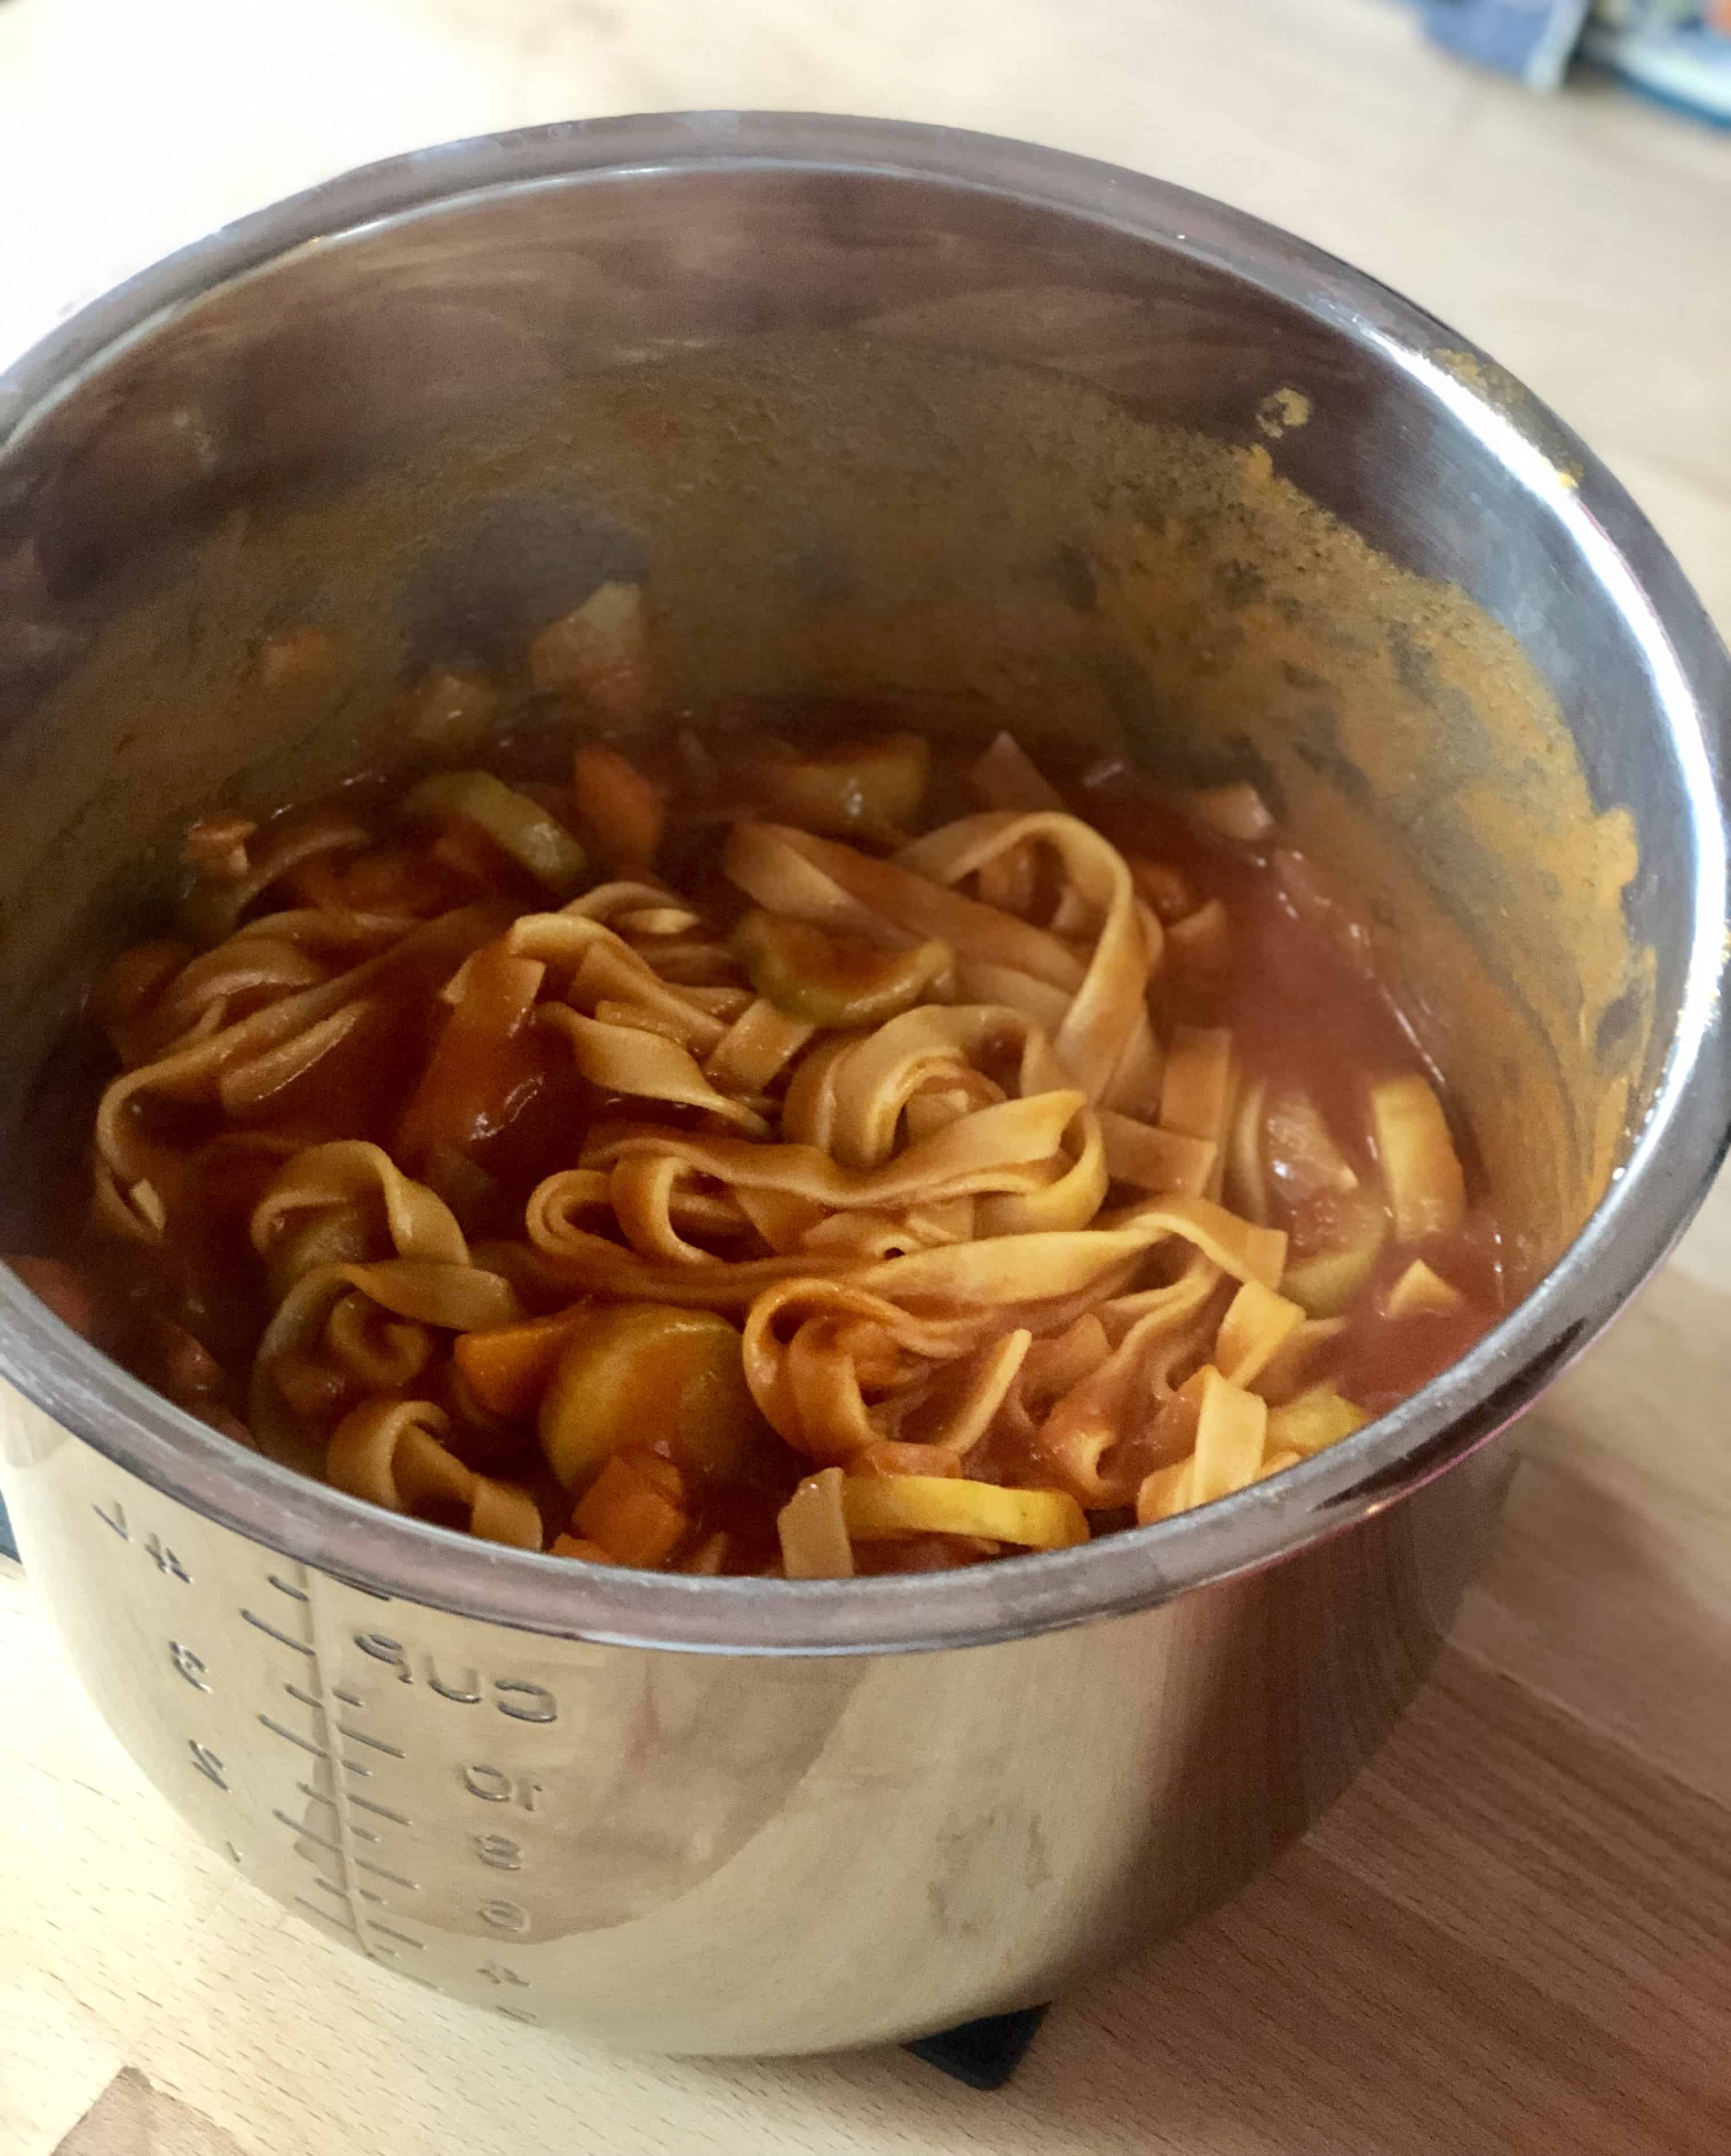 https://www.feistytapas.com/wp-content/uploads/2019/07/Instant-Pot-Chorizo-Pasta-by-Feisty-Tapas-inside-the-inner-pot.jpg